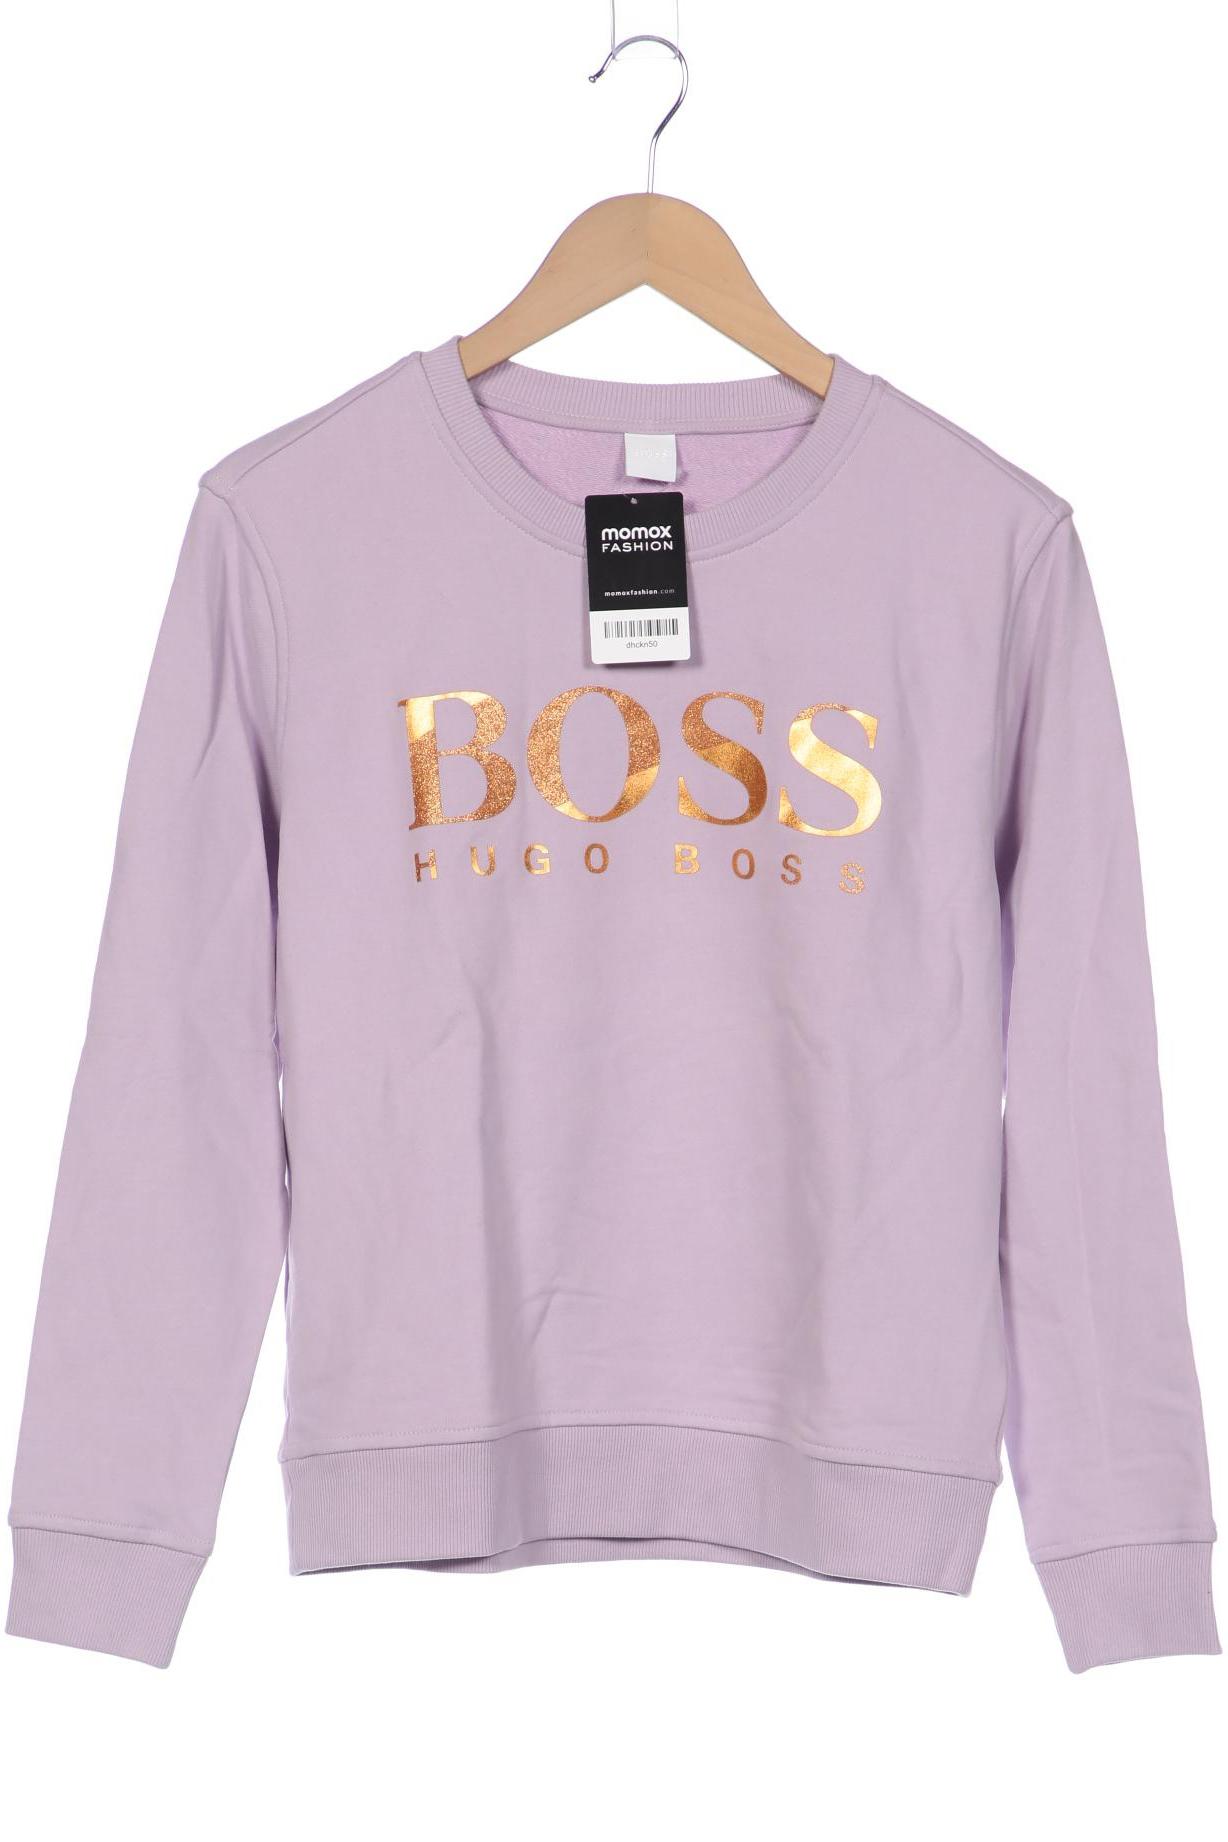 Boss by Hugo Boss Damen Sweatshirt, flieder, Gr. 36 von BOSS by Hugo Boss